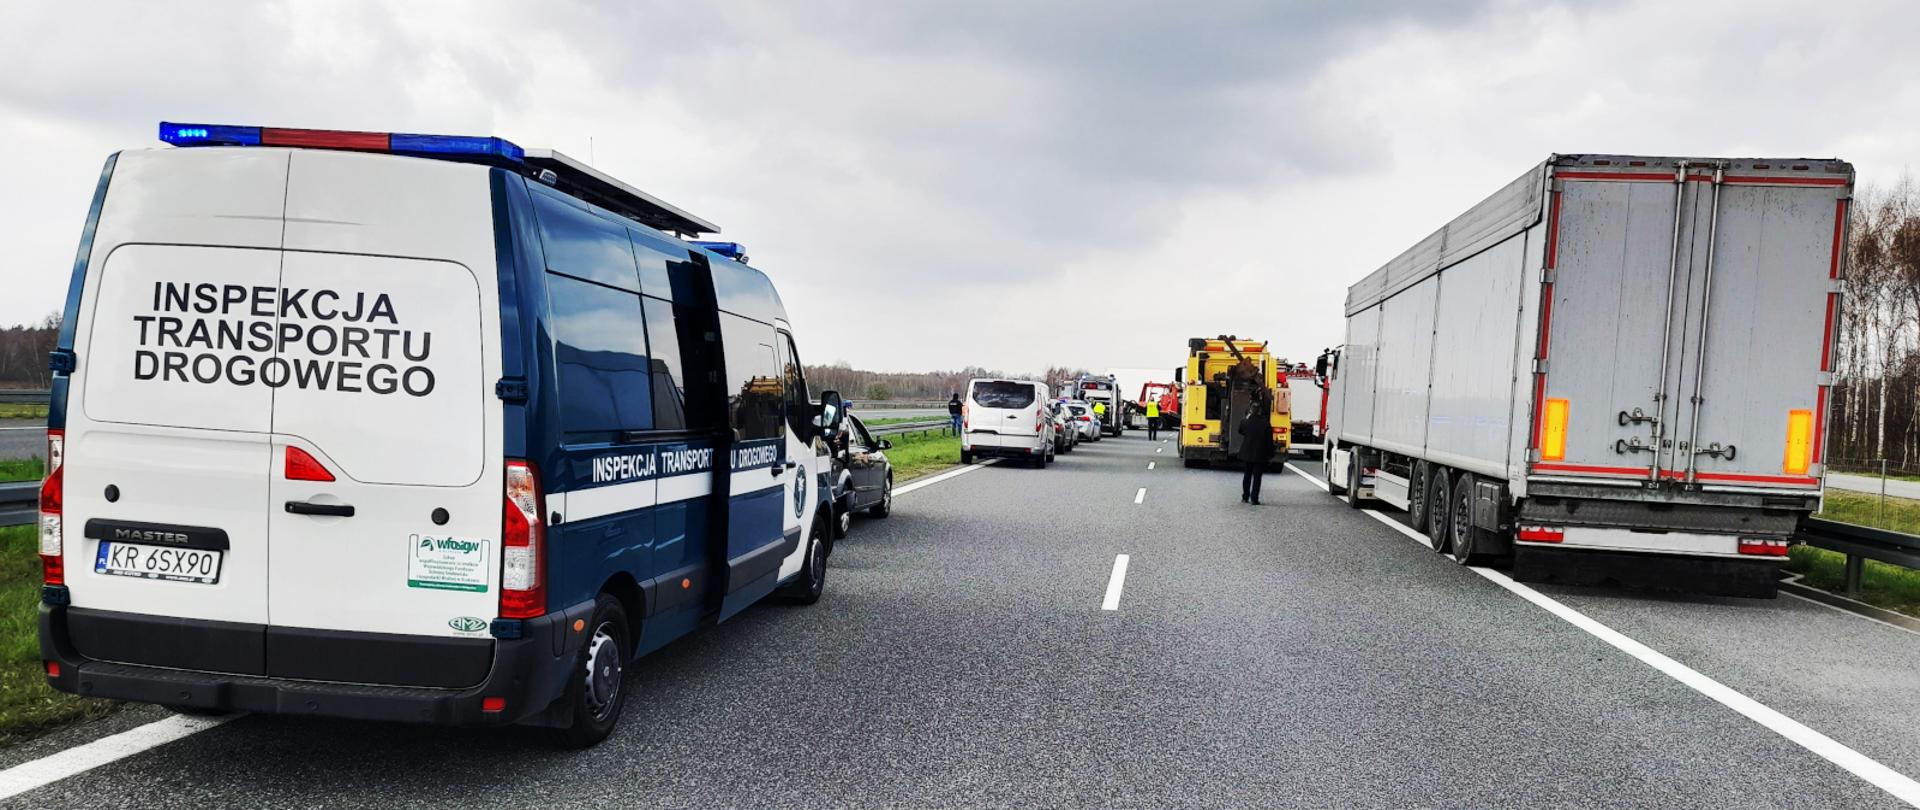 Inspektorzy małopolskiej Inspekcji Transportu Drogowego wsparli służby prowadzące czynności na miejscu wypadku na A4. Na pierwszym planie inspekcyjny furgon, przed nim inne pojazdy służb i miejsce zdarzenia.